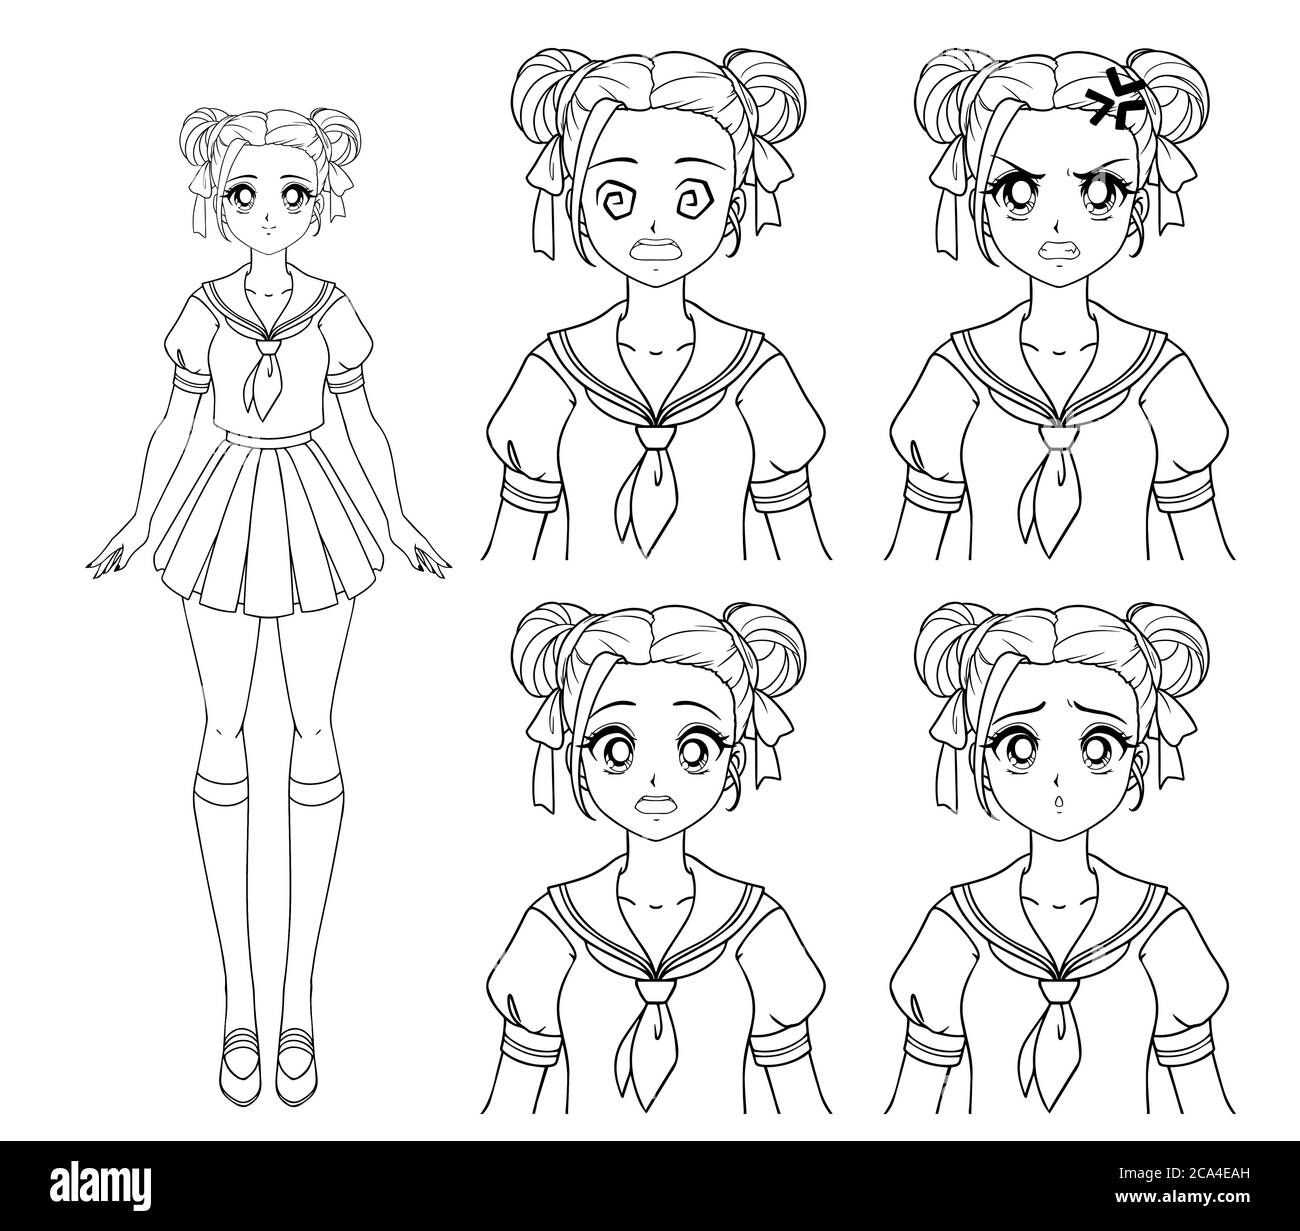 Mignonne fille de manga portant l'uniforme scolaire japonais. Ensemble de  quatre expressions différentes. Triste, heureux, en colère, peur.  Illustration vectorielle dessinée à la main. Isoler Image Vectorielle Stock  - Alamy